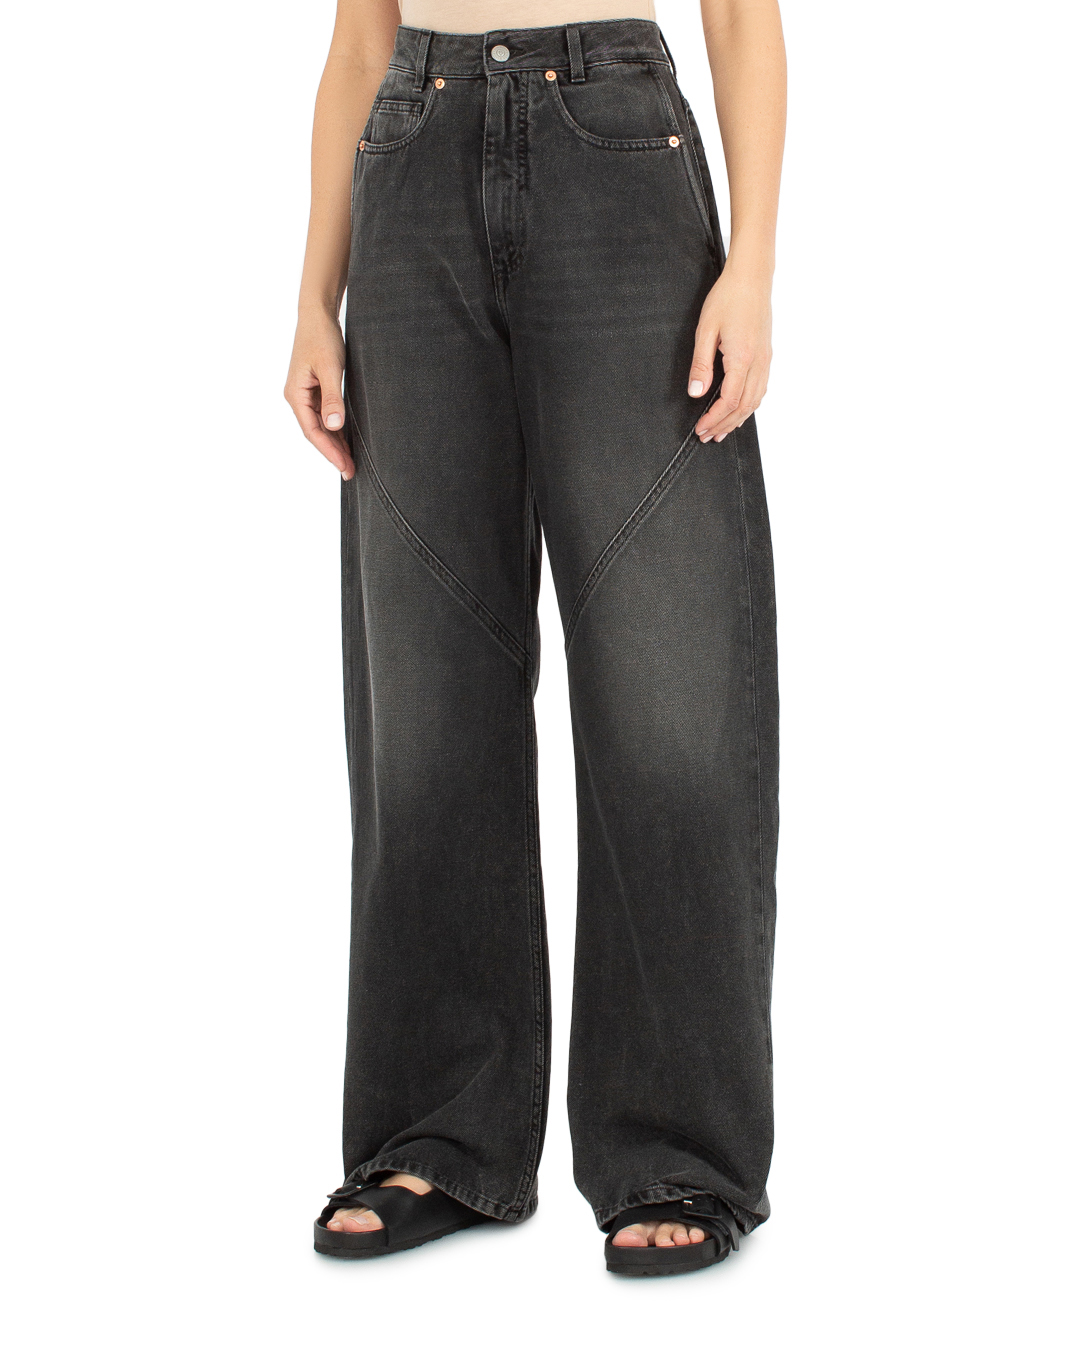 джинсы MM6 Maison Margiela S62LB0160 черный 27, размер 27 - фото 3